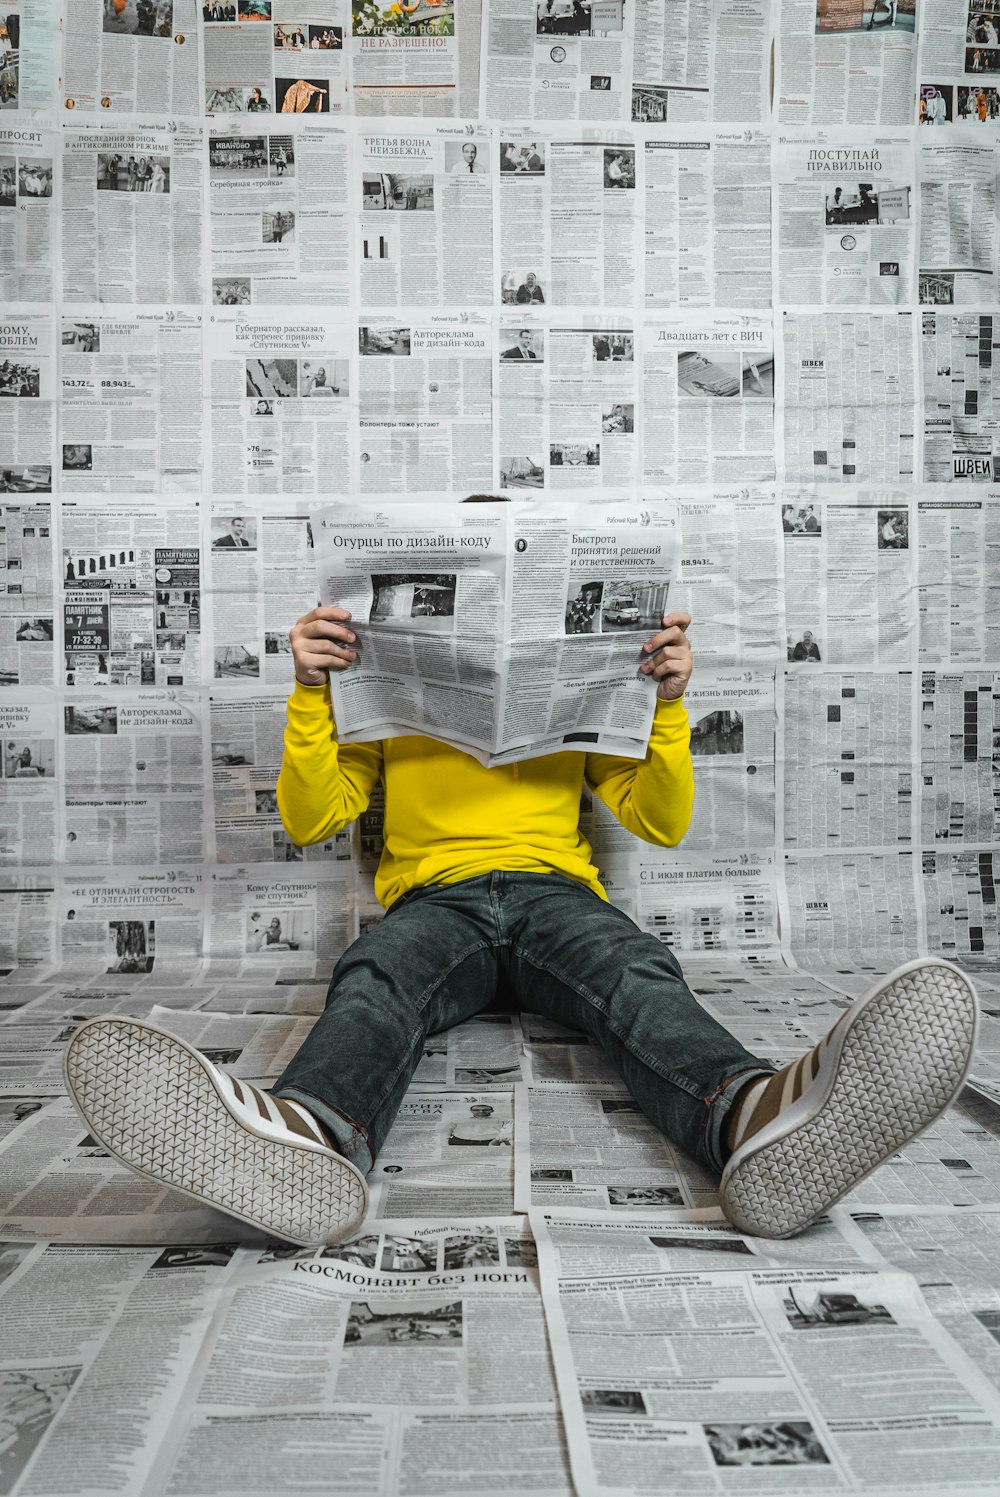 Una persona sentada en el suelo leyendo un periódico